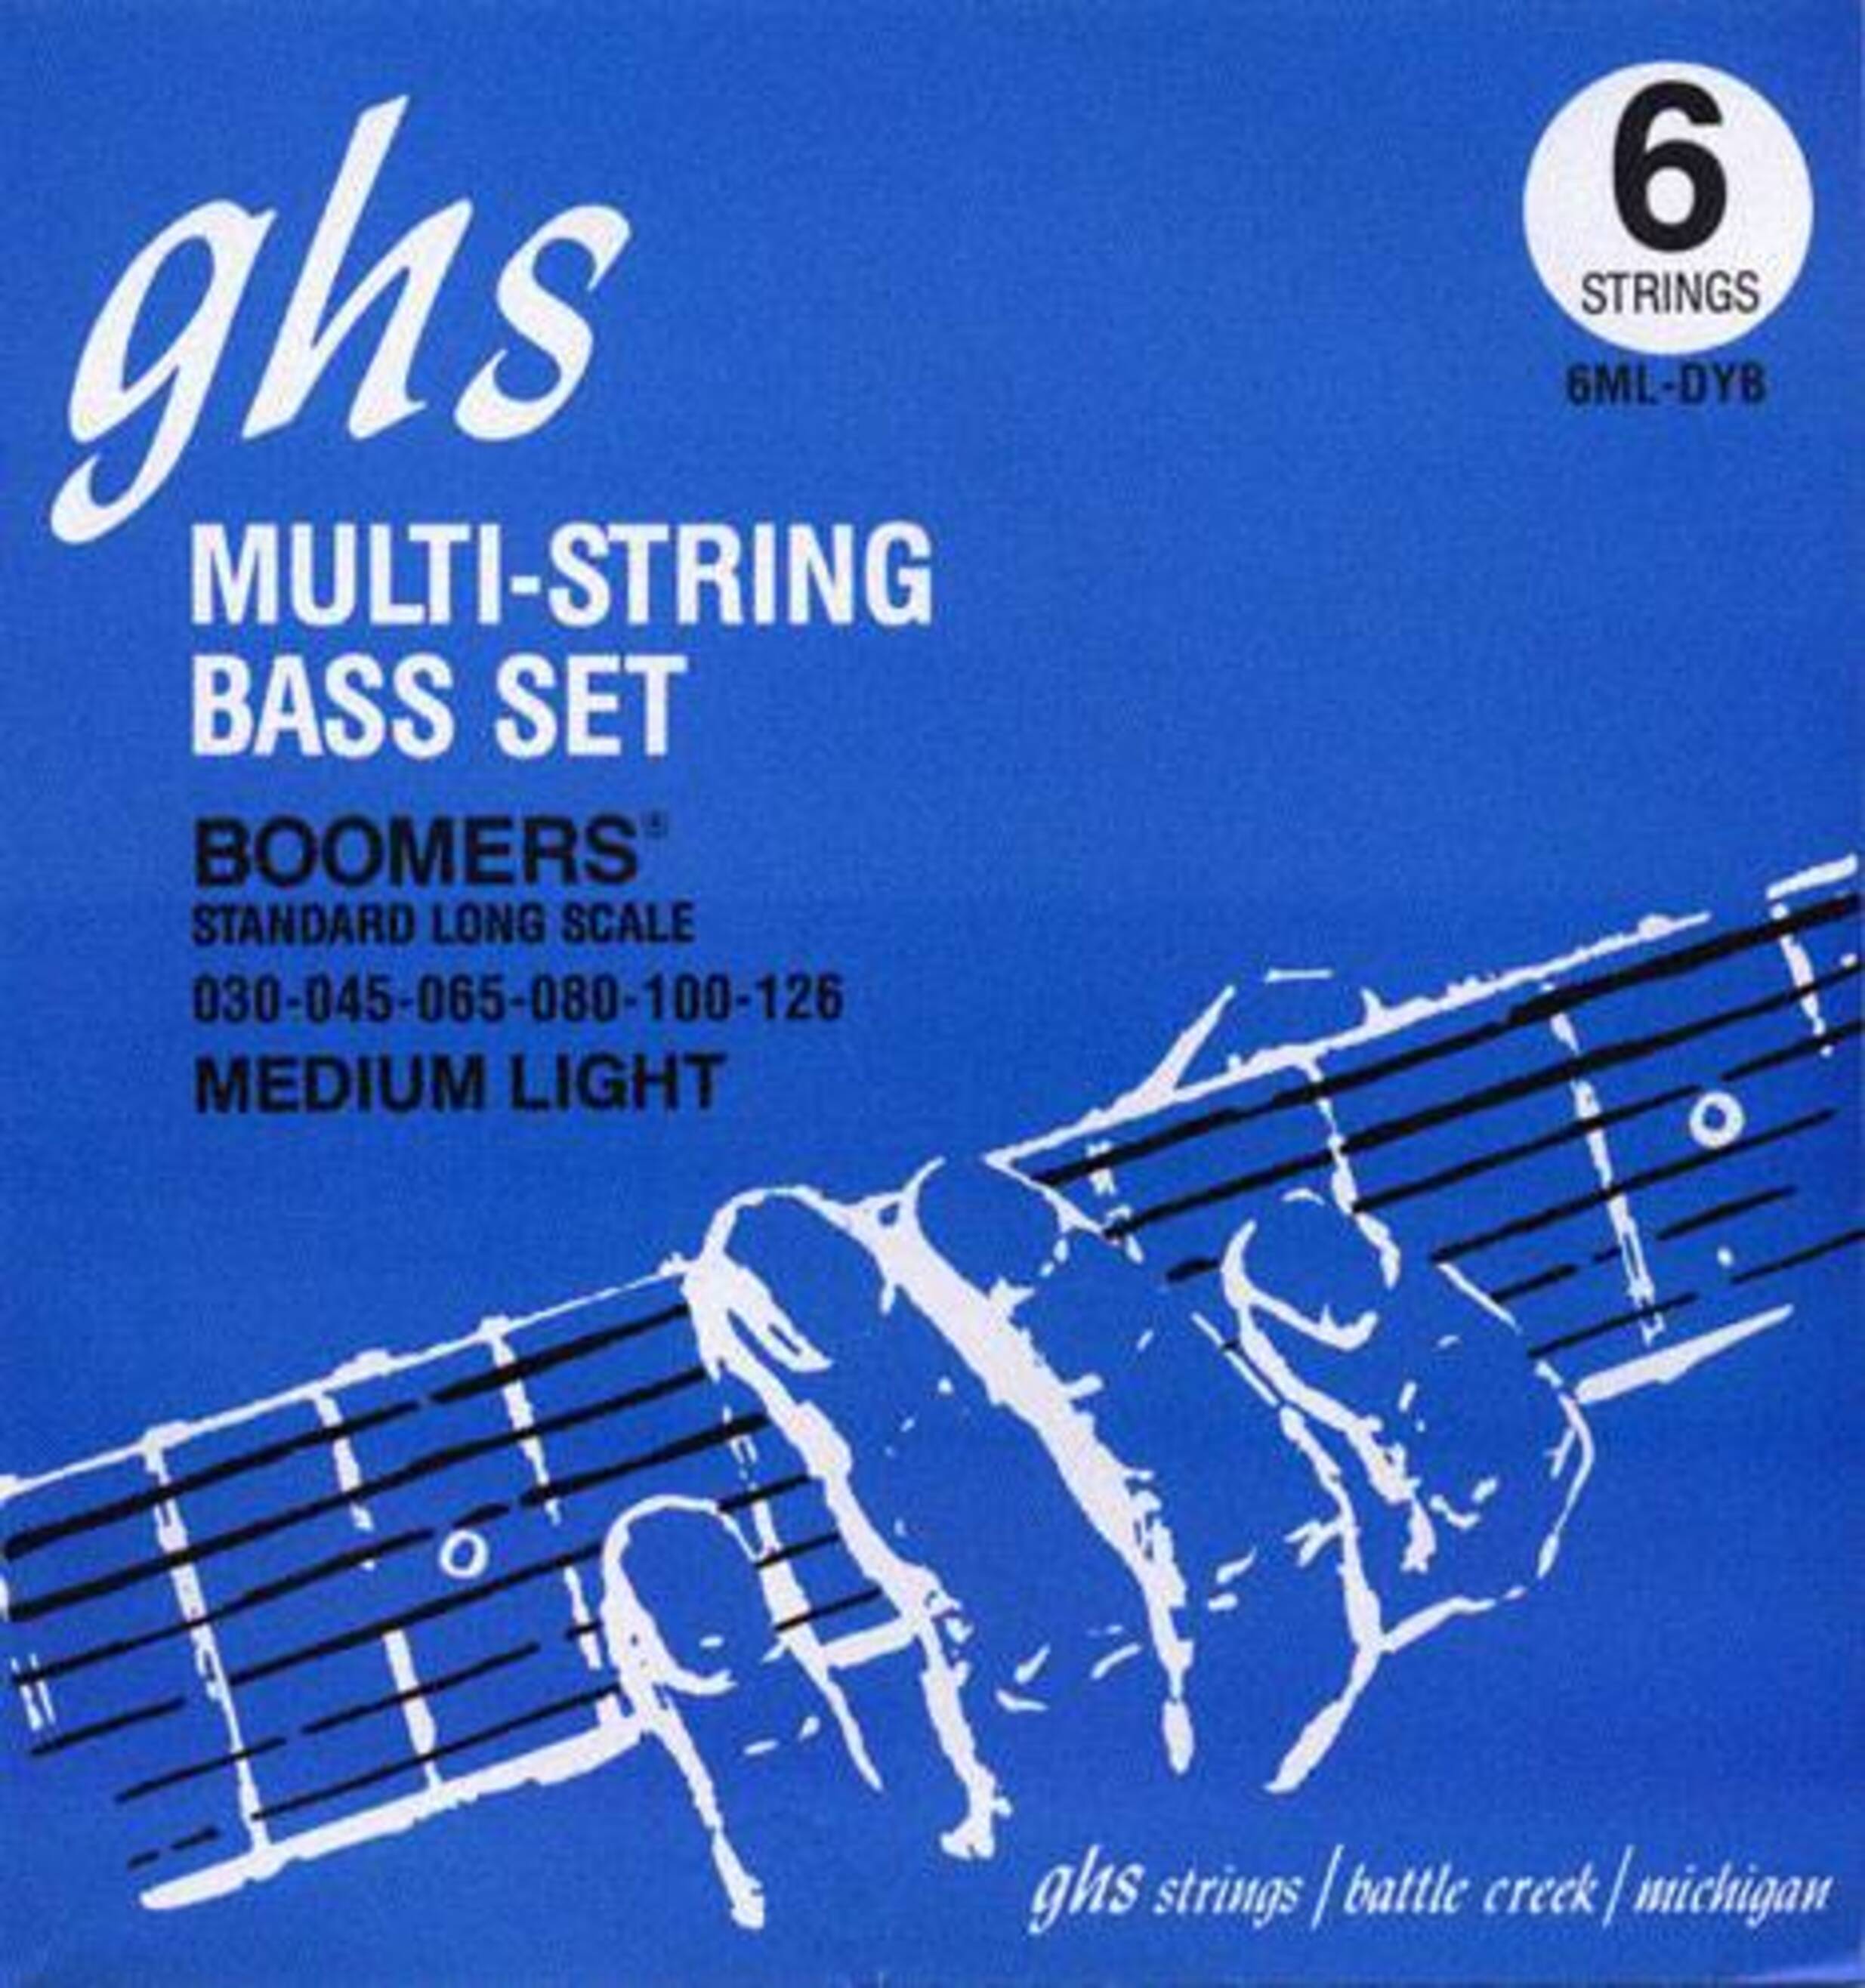 Струны GHS Strings 6ML-DYB струны la bella rx n5d